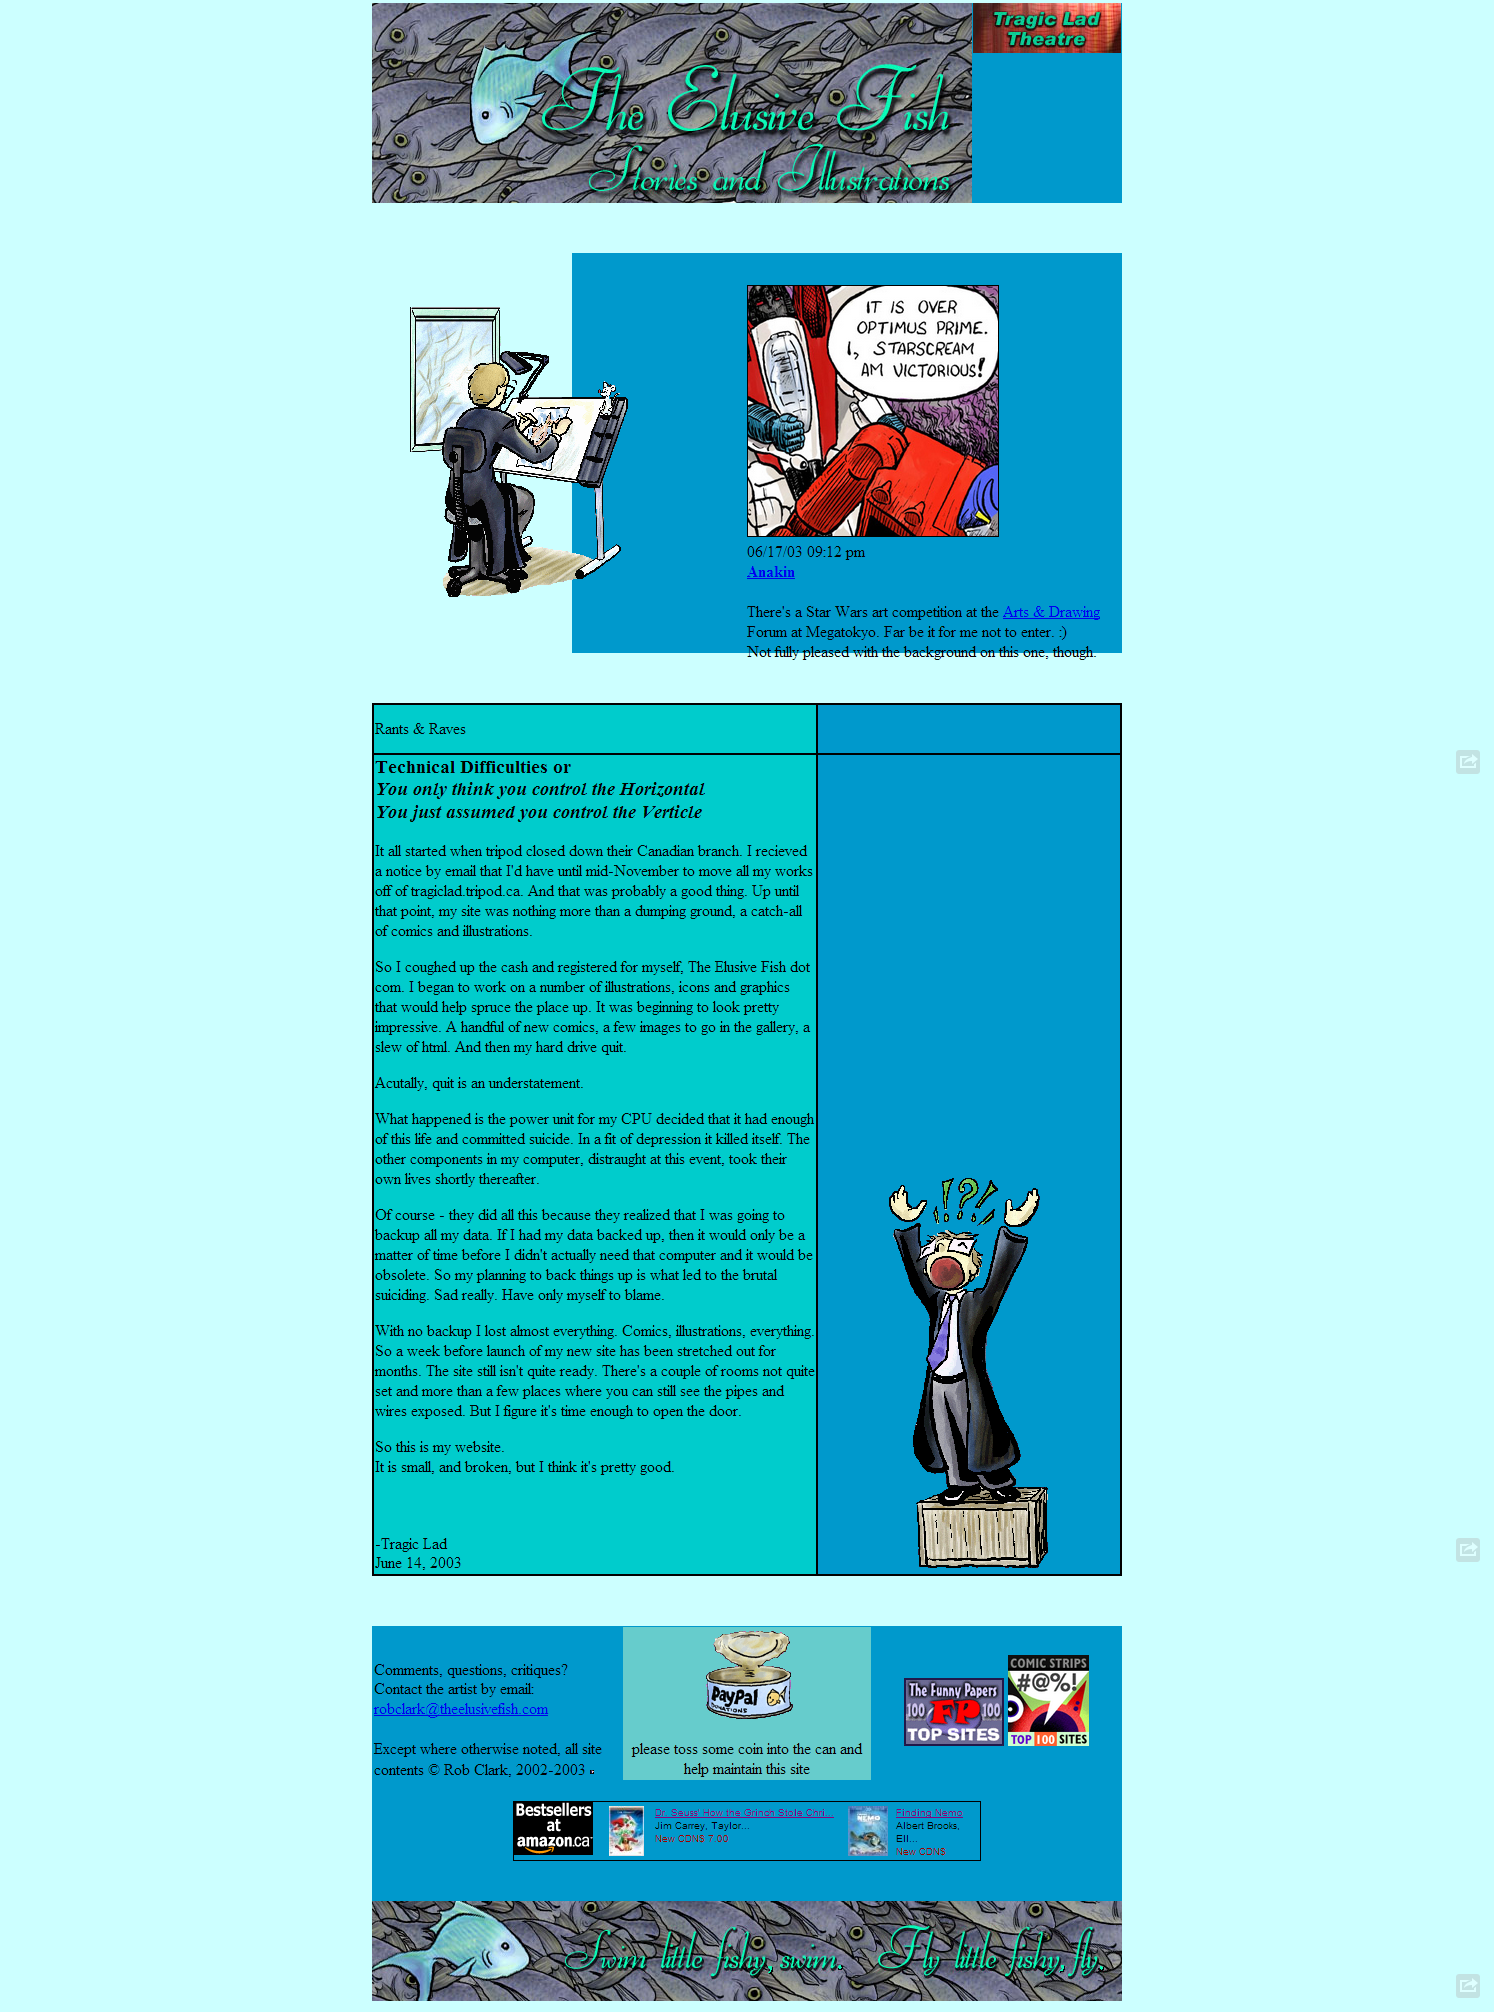 Screen capture of the original site design for theelusivefish.com